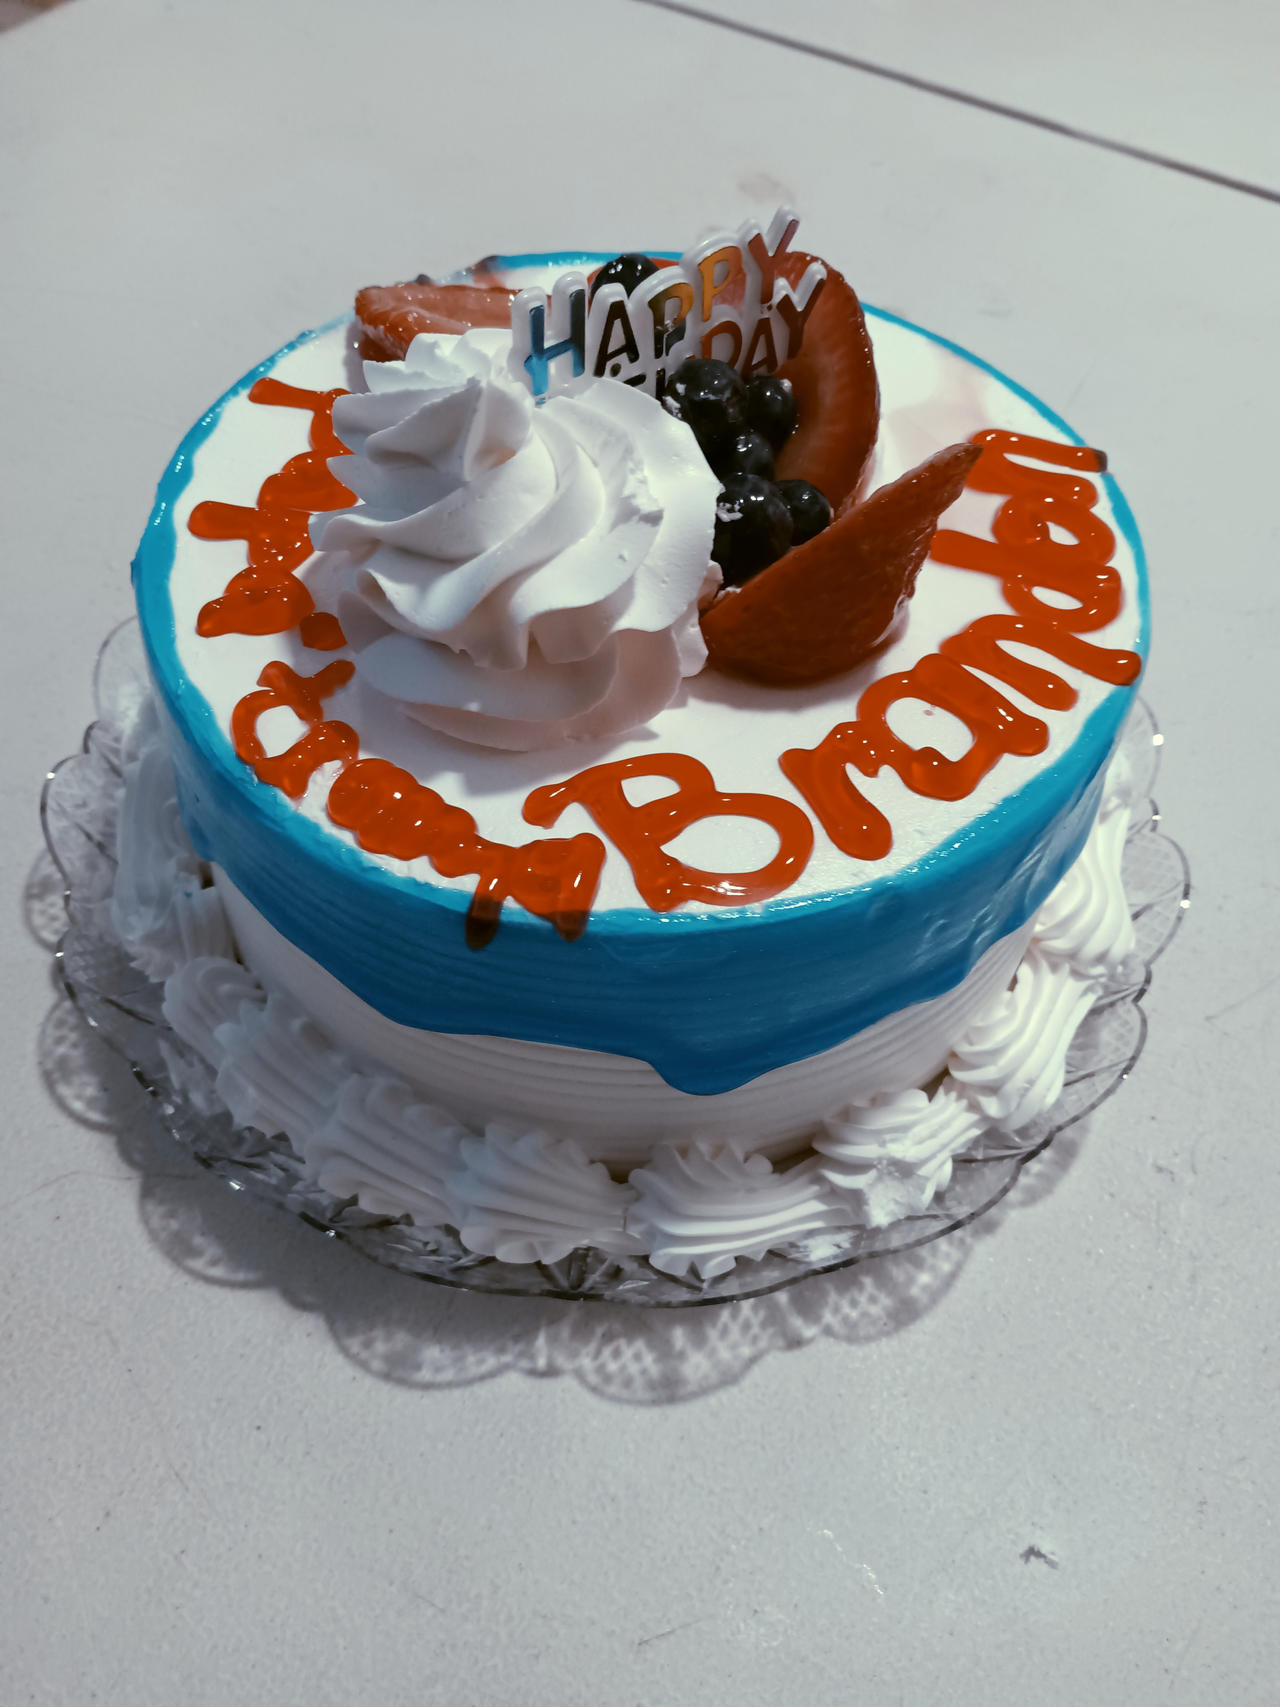 A Special Birthday Cake For Me! by BrandonJuarez622 on DeviantArt